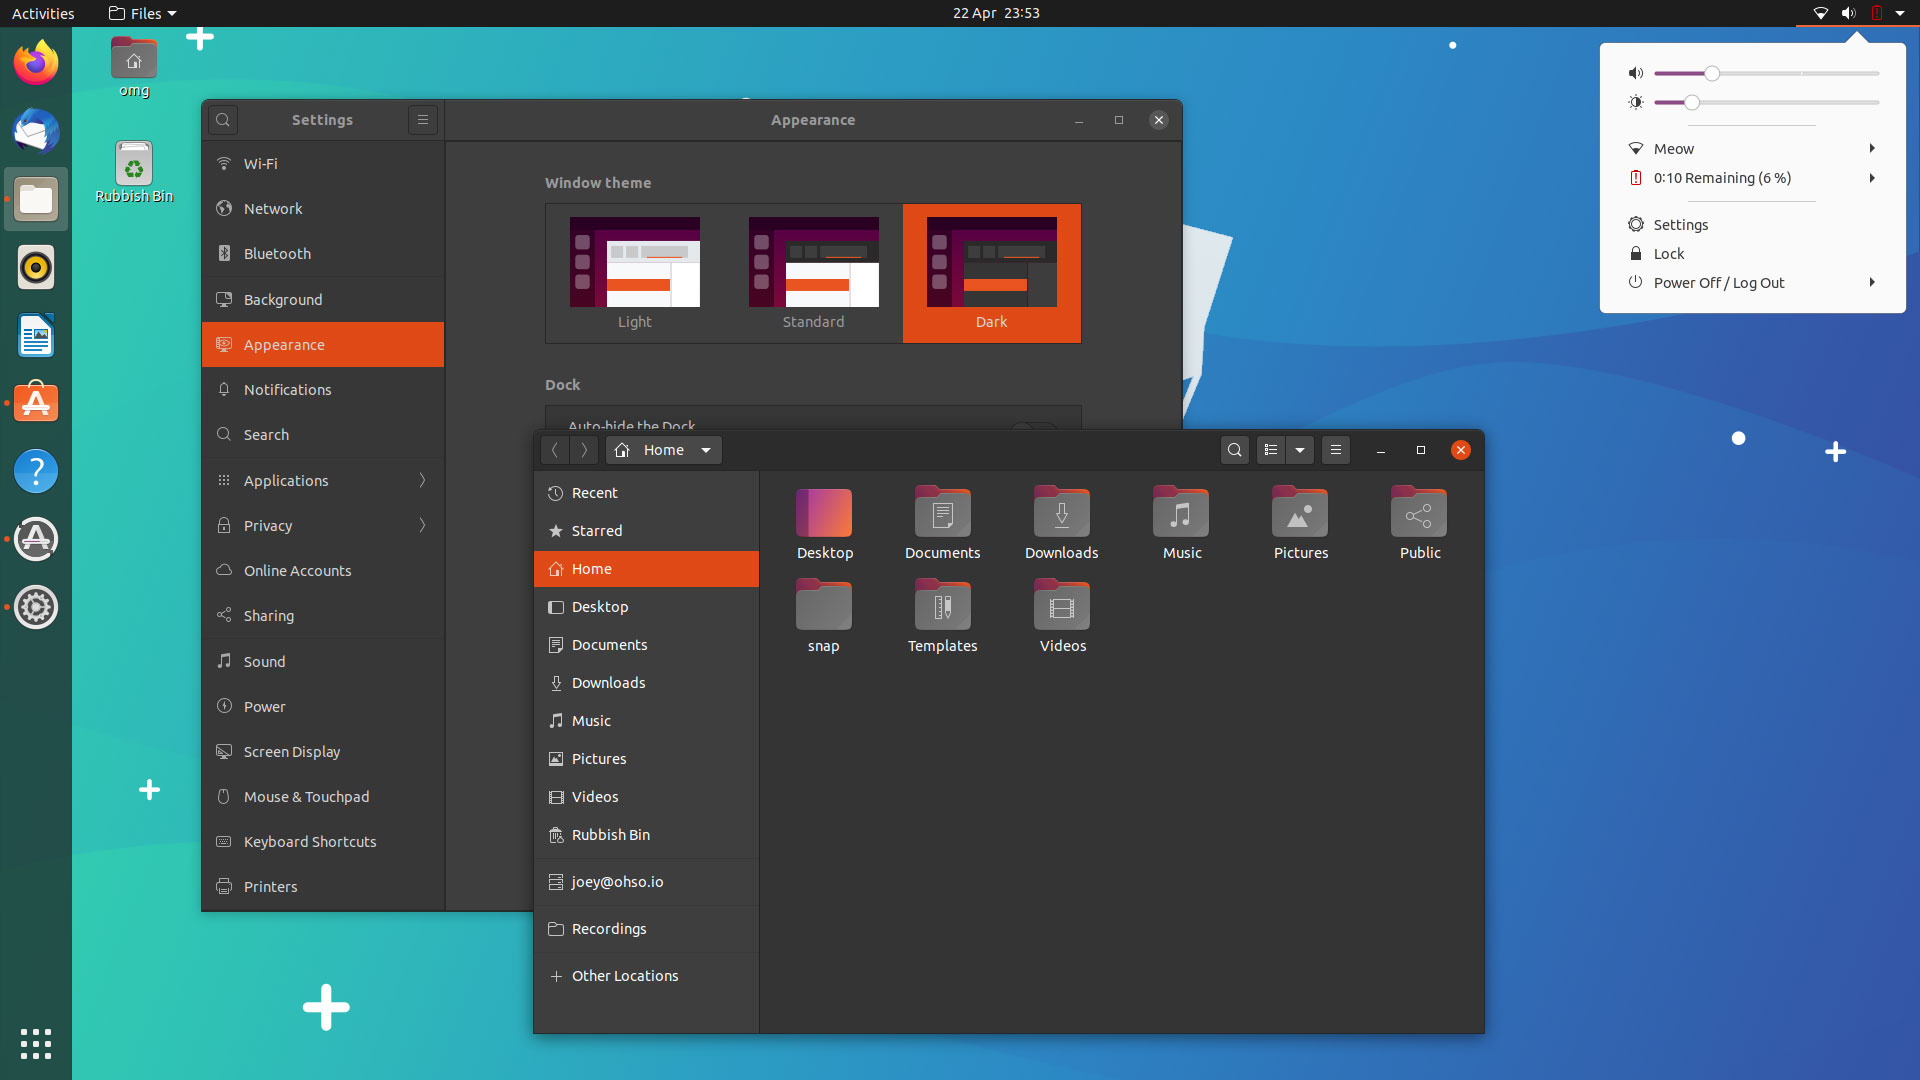 How To Enable Full Dark Mode In Ubuntu 04 Lts Omg Ubuntu